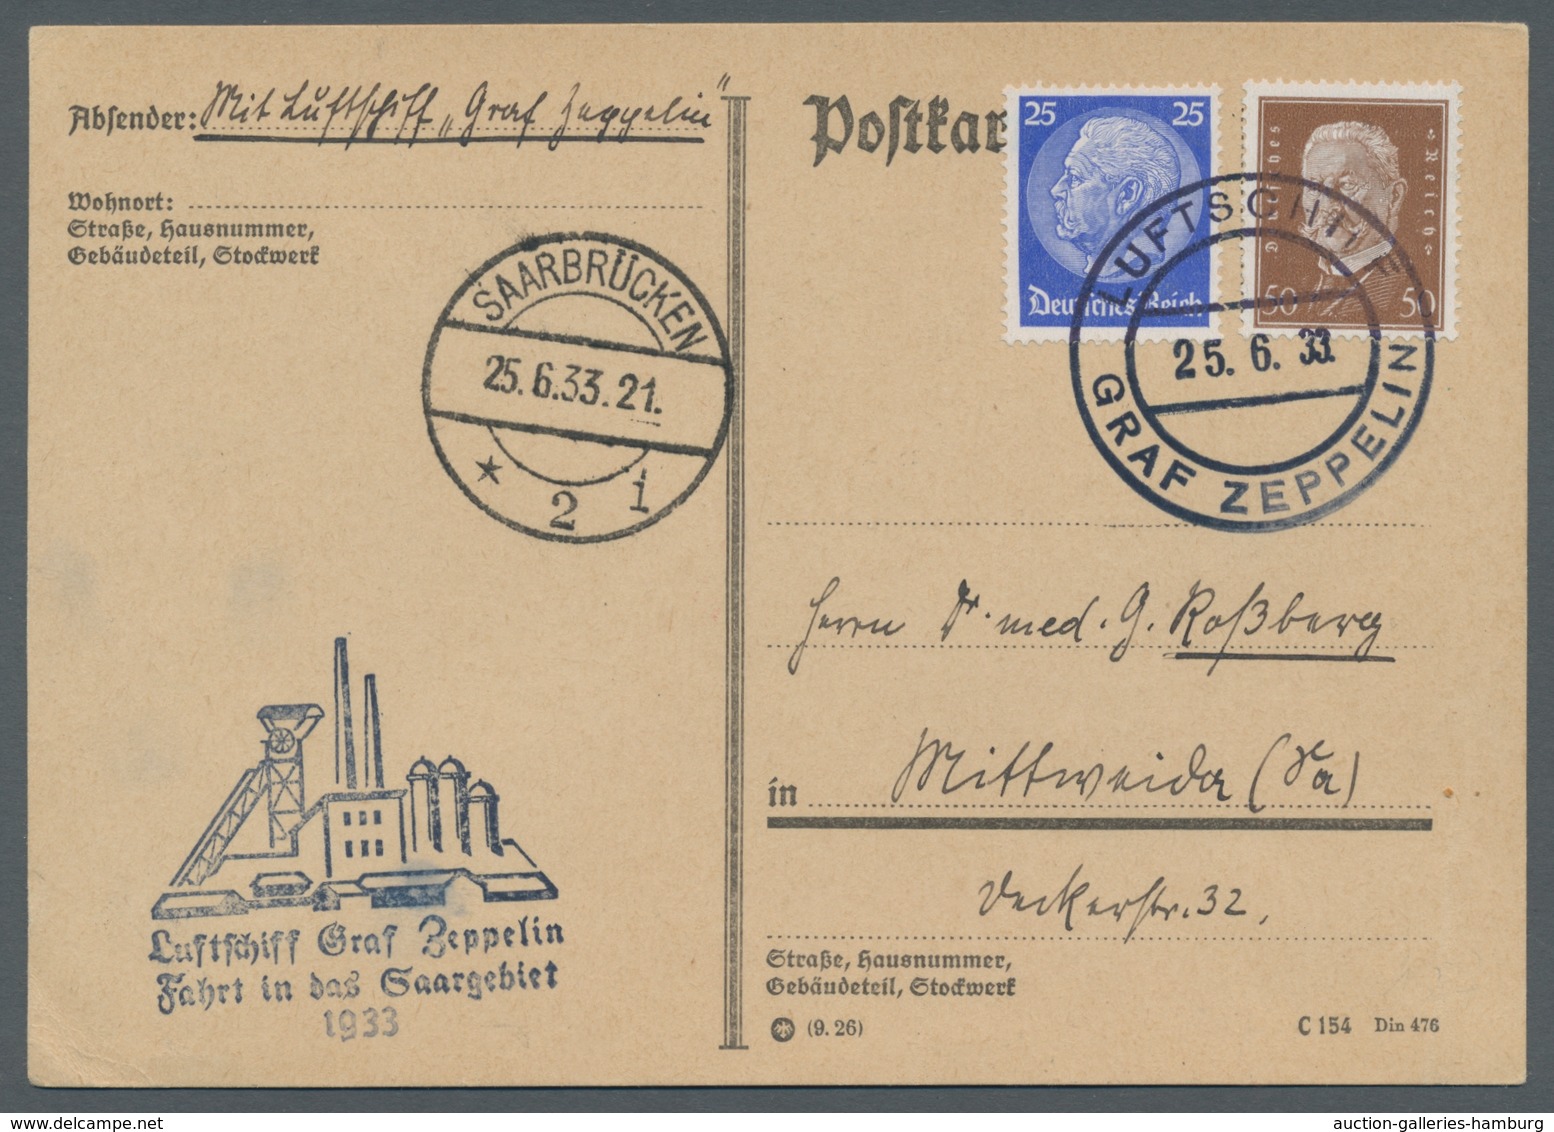 Zeppelinpost Deutschland: 1933, Saarbrücken - Rundfahrt - Saarbrücken Am 25.6. Ak.Stpl. 25.6.33, 21 - Correo Aéreo & Zeppelin